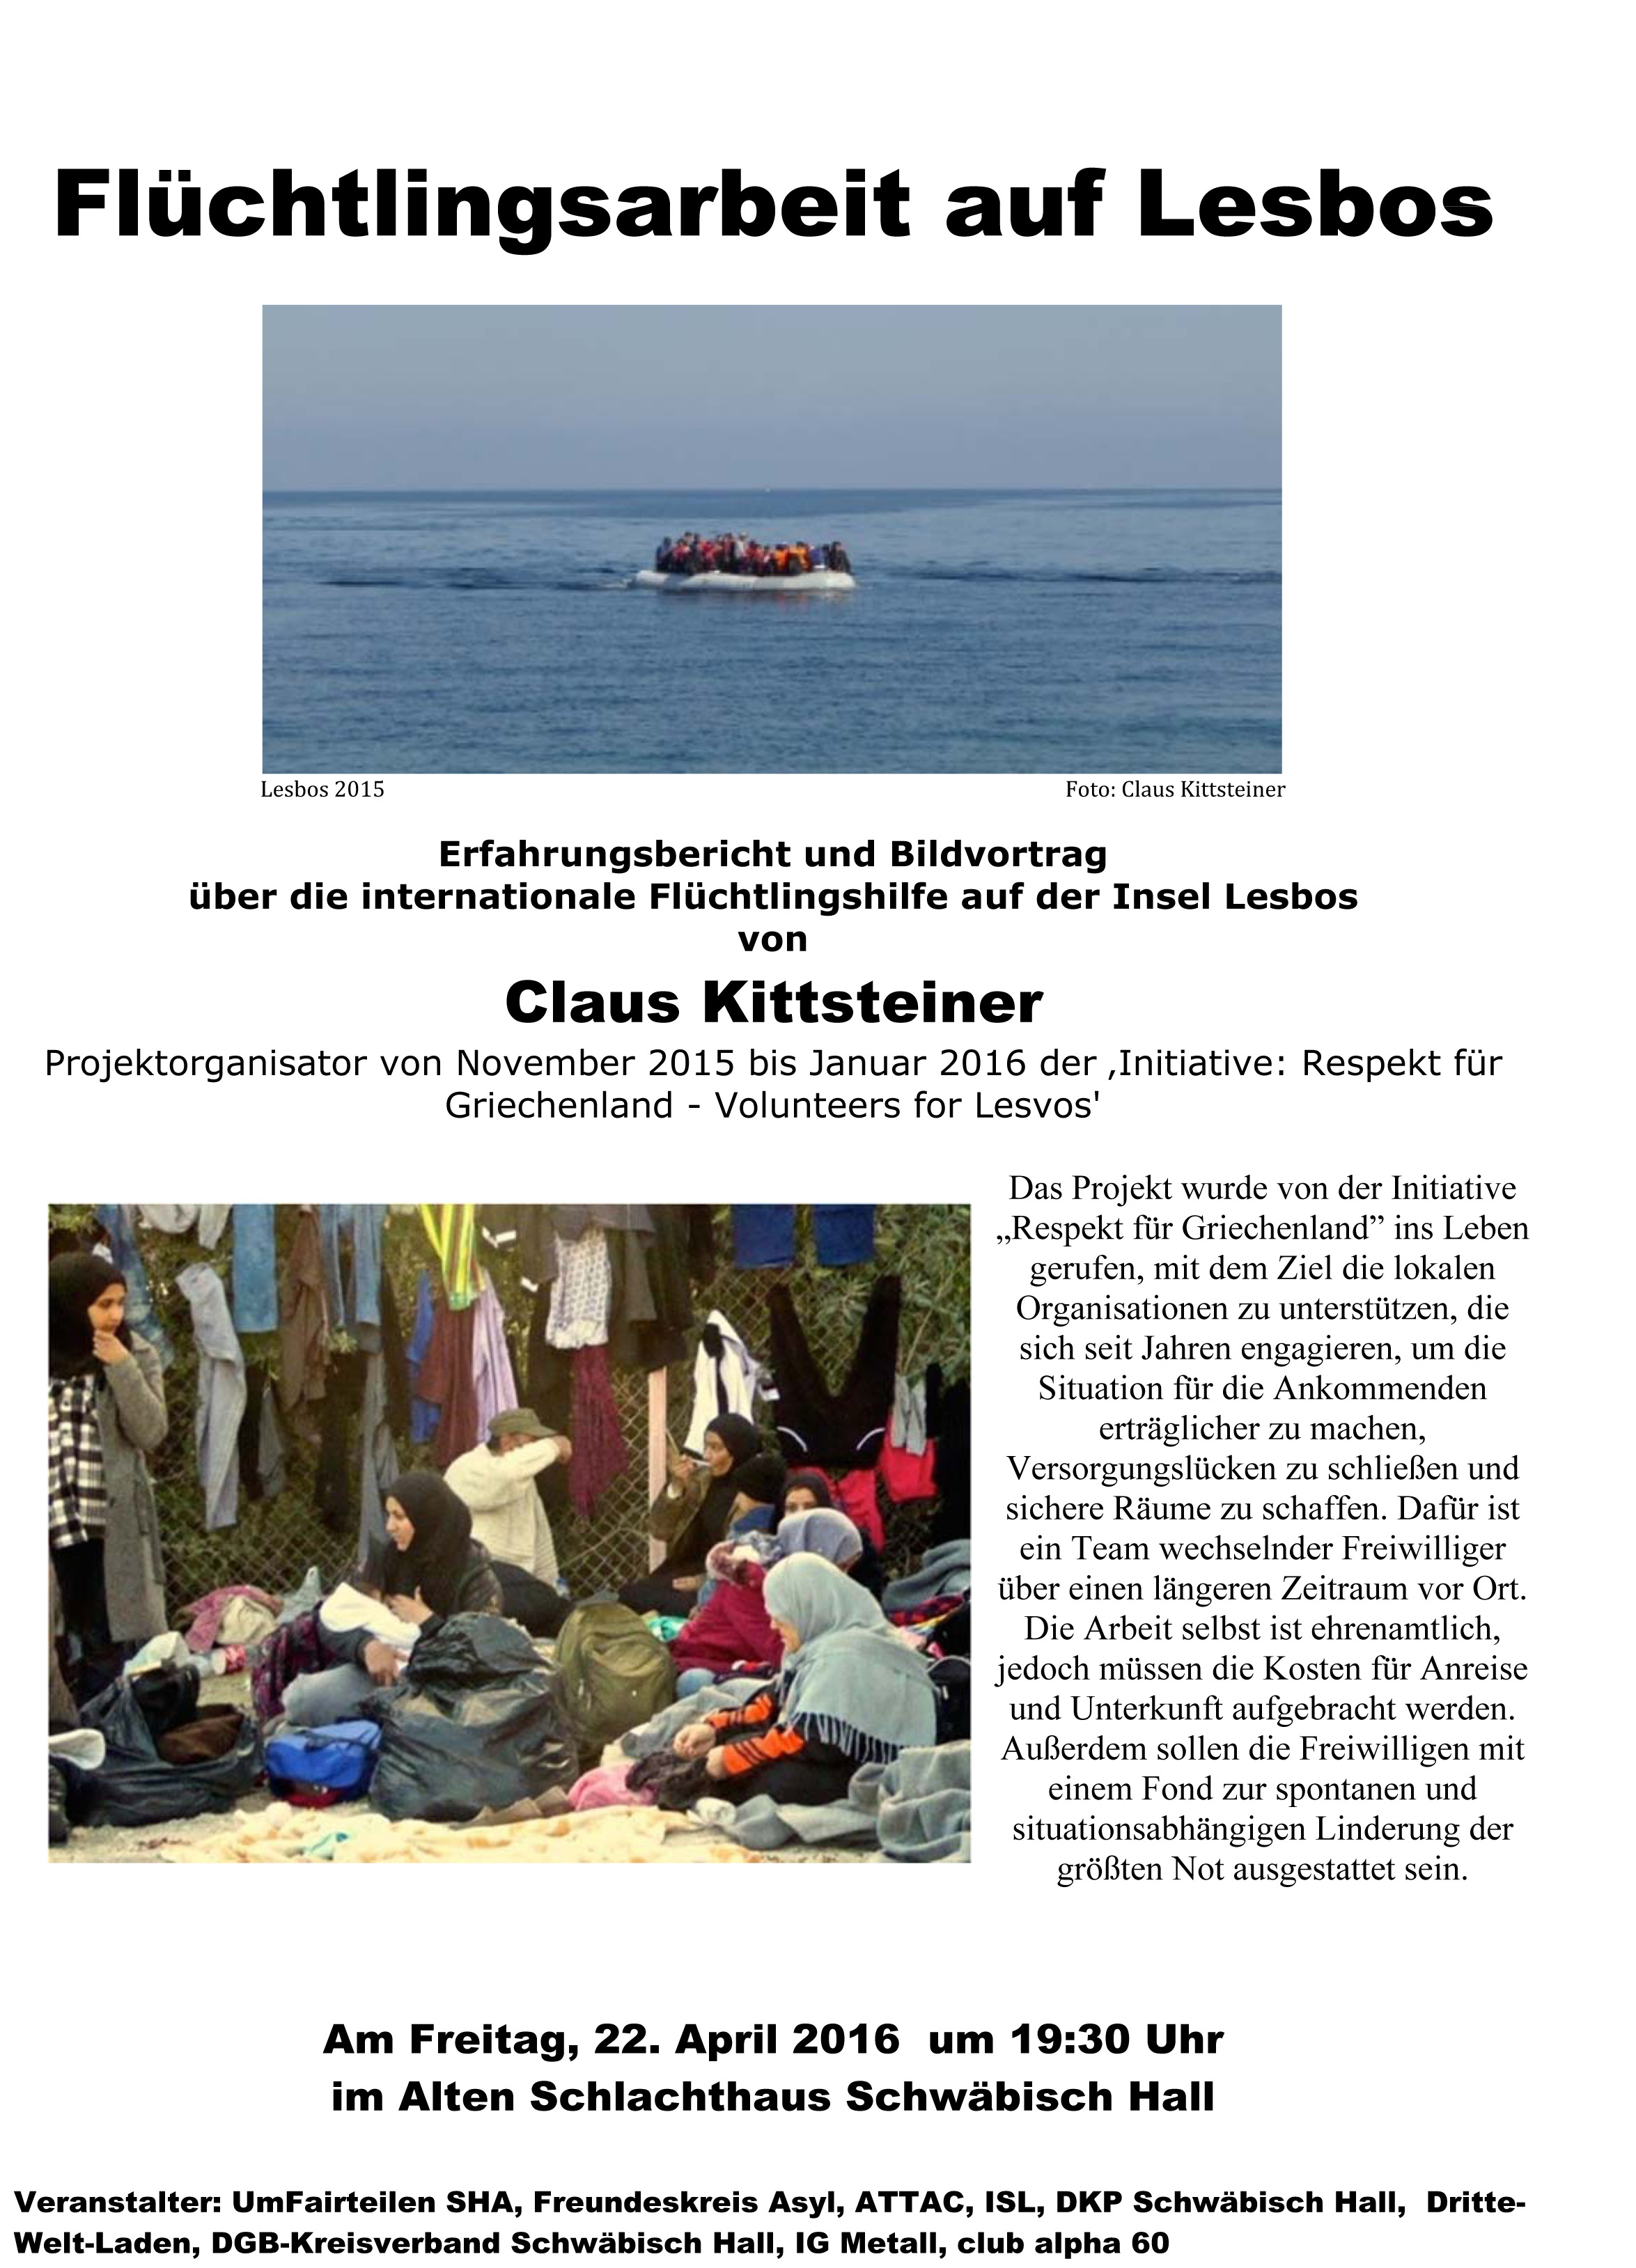 Freitag, 22.4.2016: Vortrag zur Flüchtlingsarbeit auf Lesbos